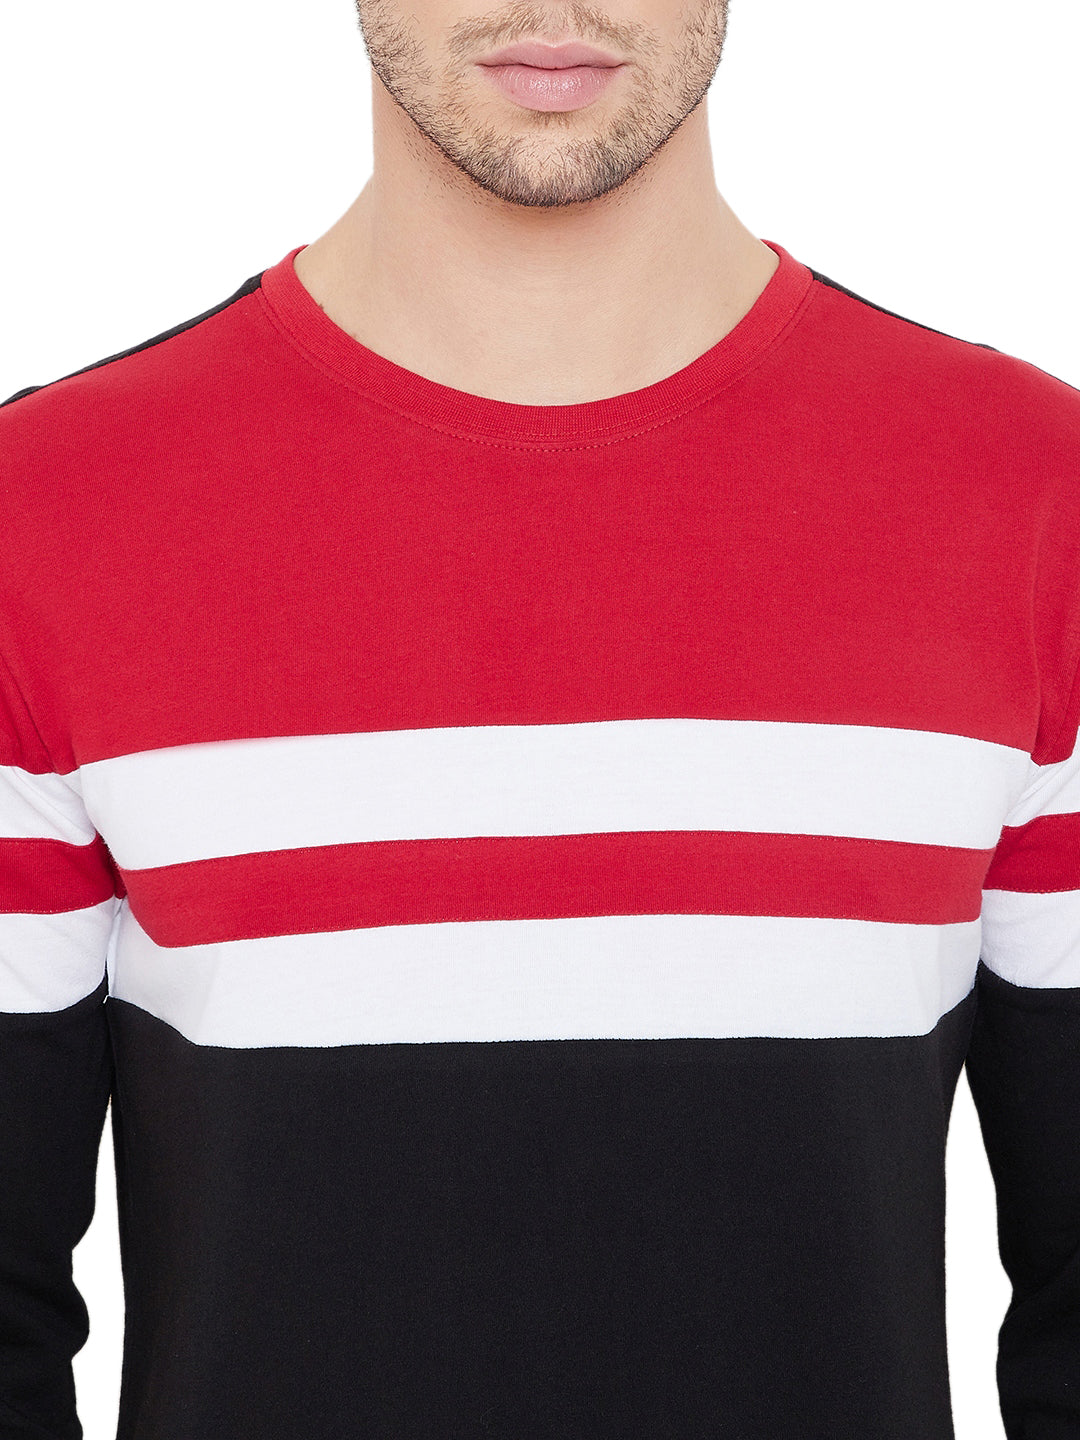 Red/White/Black Men Full Sleeves Round Neck Color Block T-Shirt